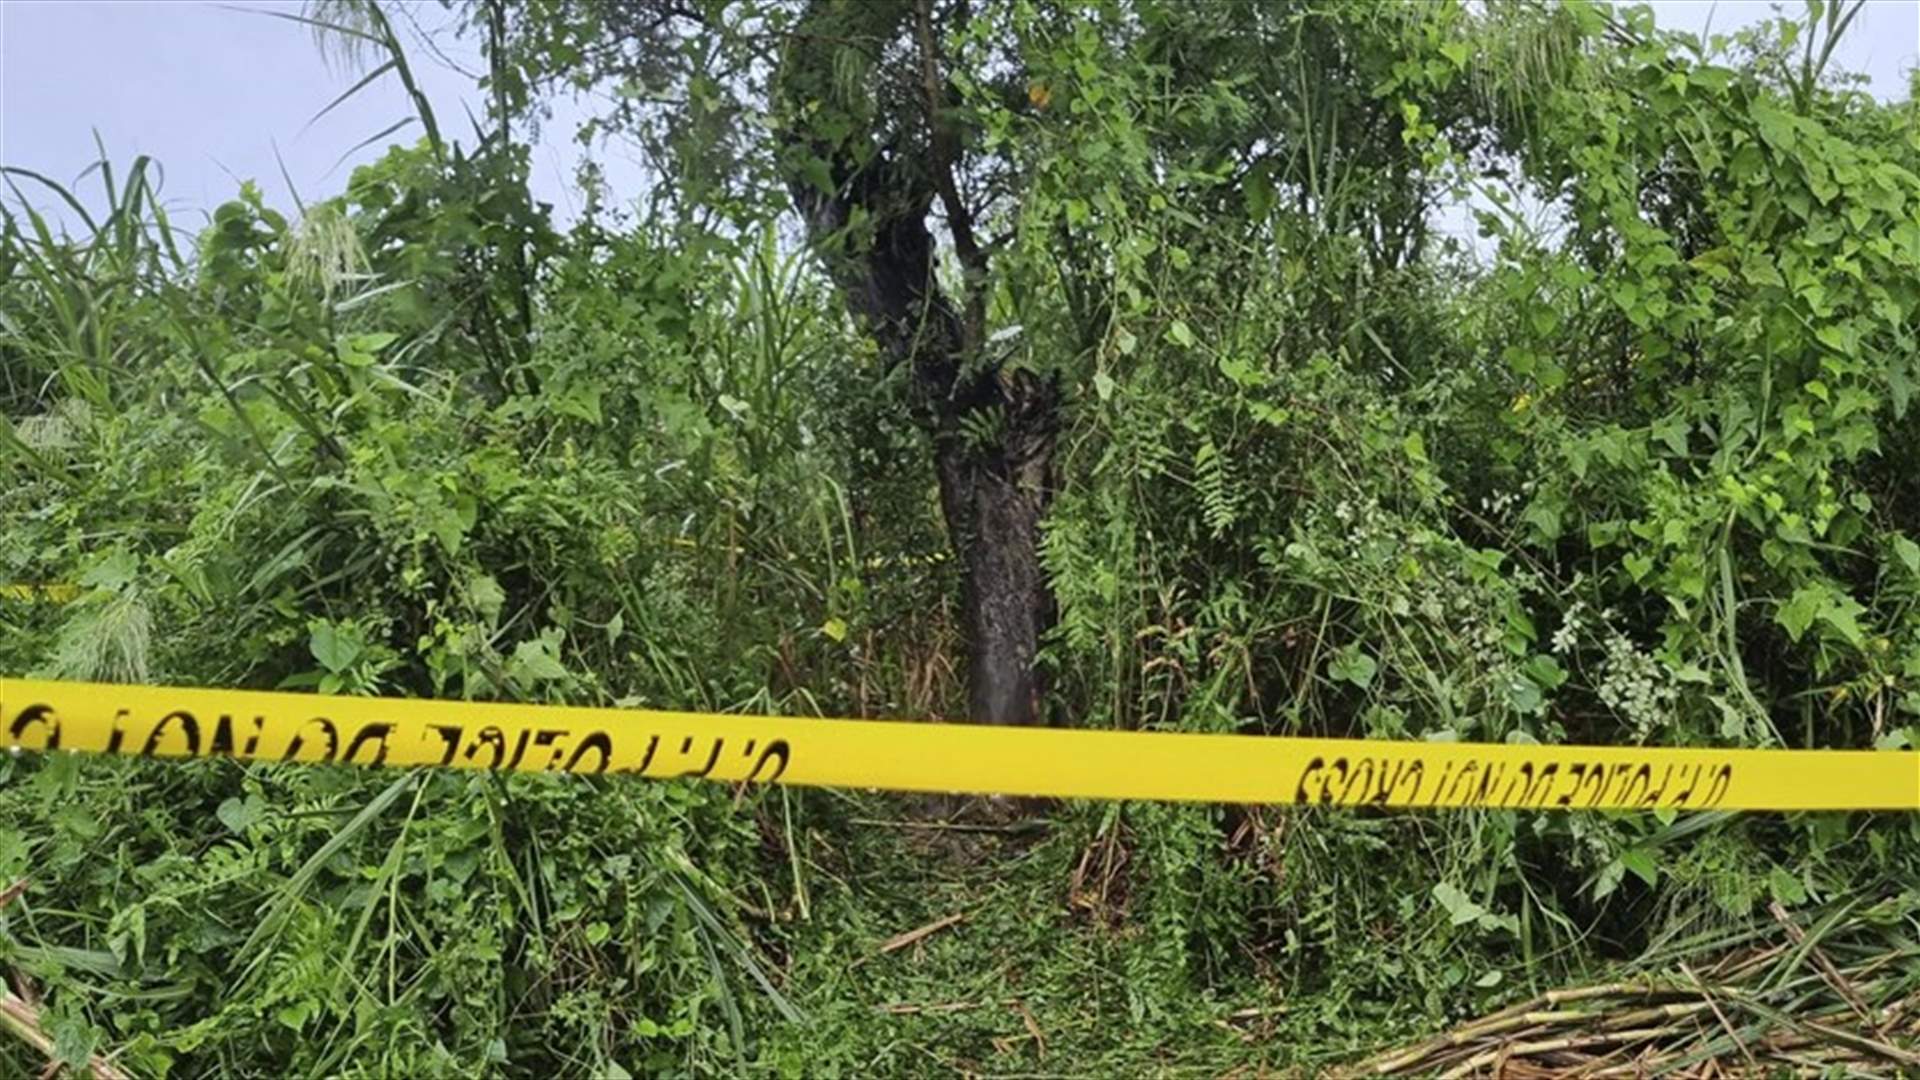 عُثر على جثتيهما معلقتين على شجرة... اعتقال 6 رجال في الهند بتهمة اغتصاب وقتل شقيقتين